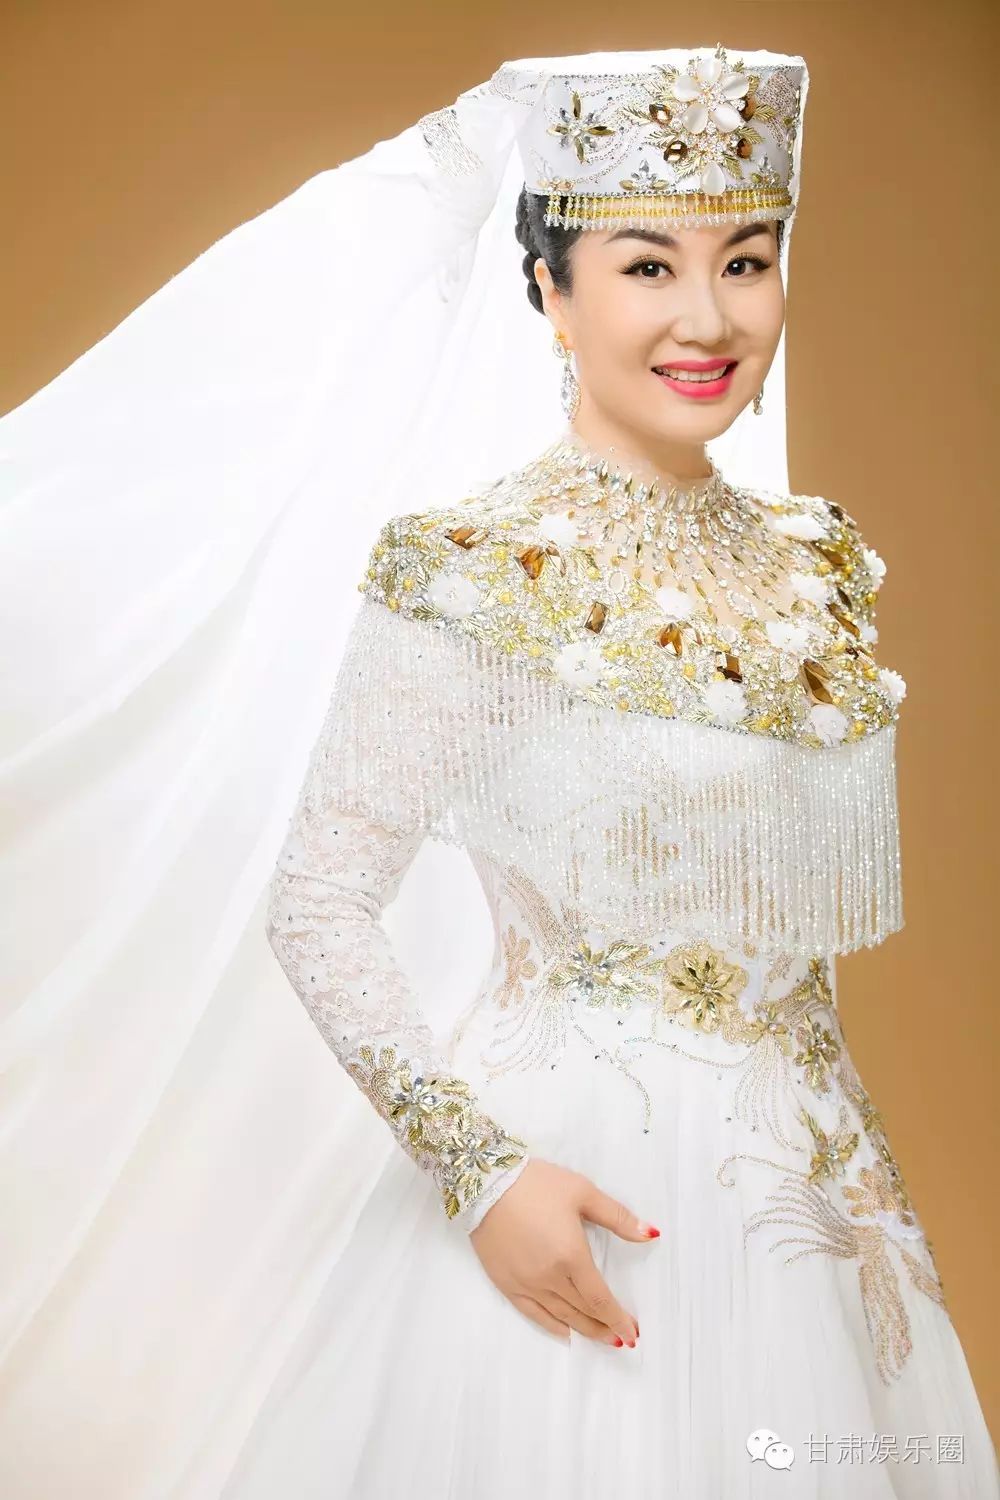 中国花儿公主保安族花儿演唱家马红莲mv《我的花儿梦》全网发布!